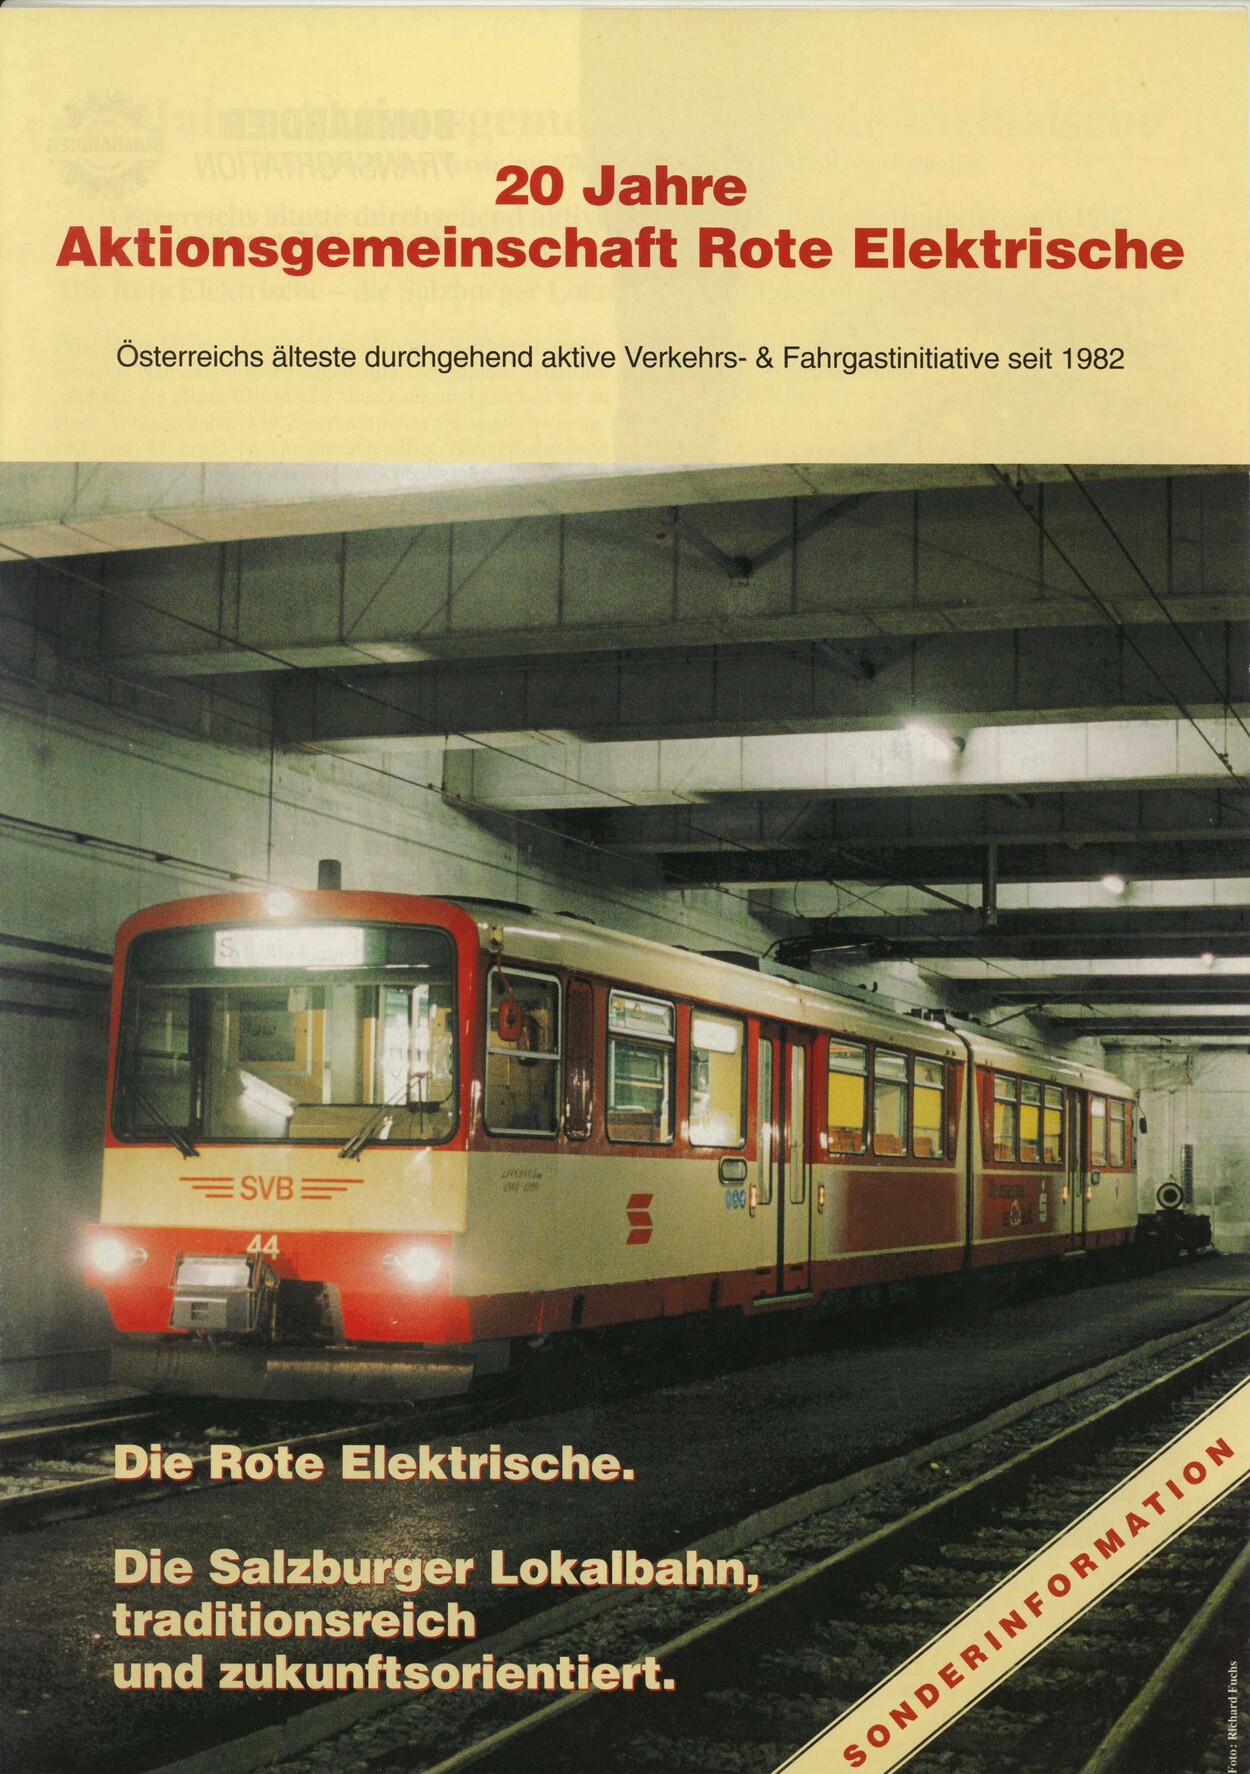 2002: Festschrift - 20 Jahre "Aktionsgemeinschaft Rote Elektrische"